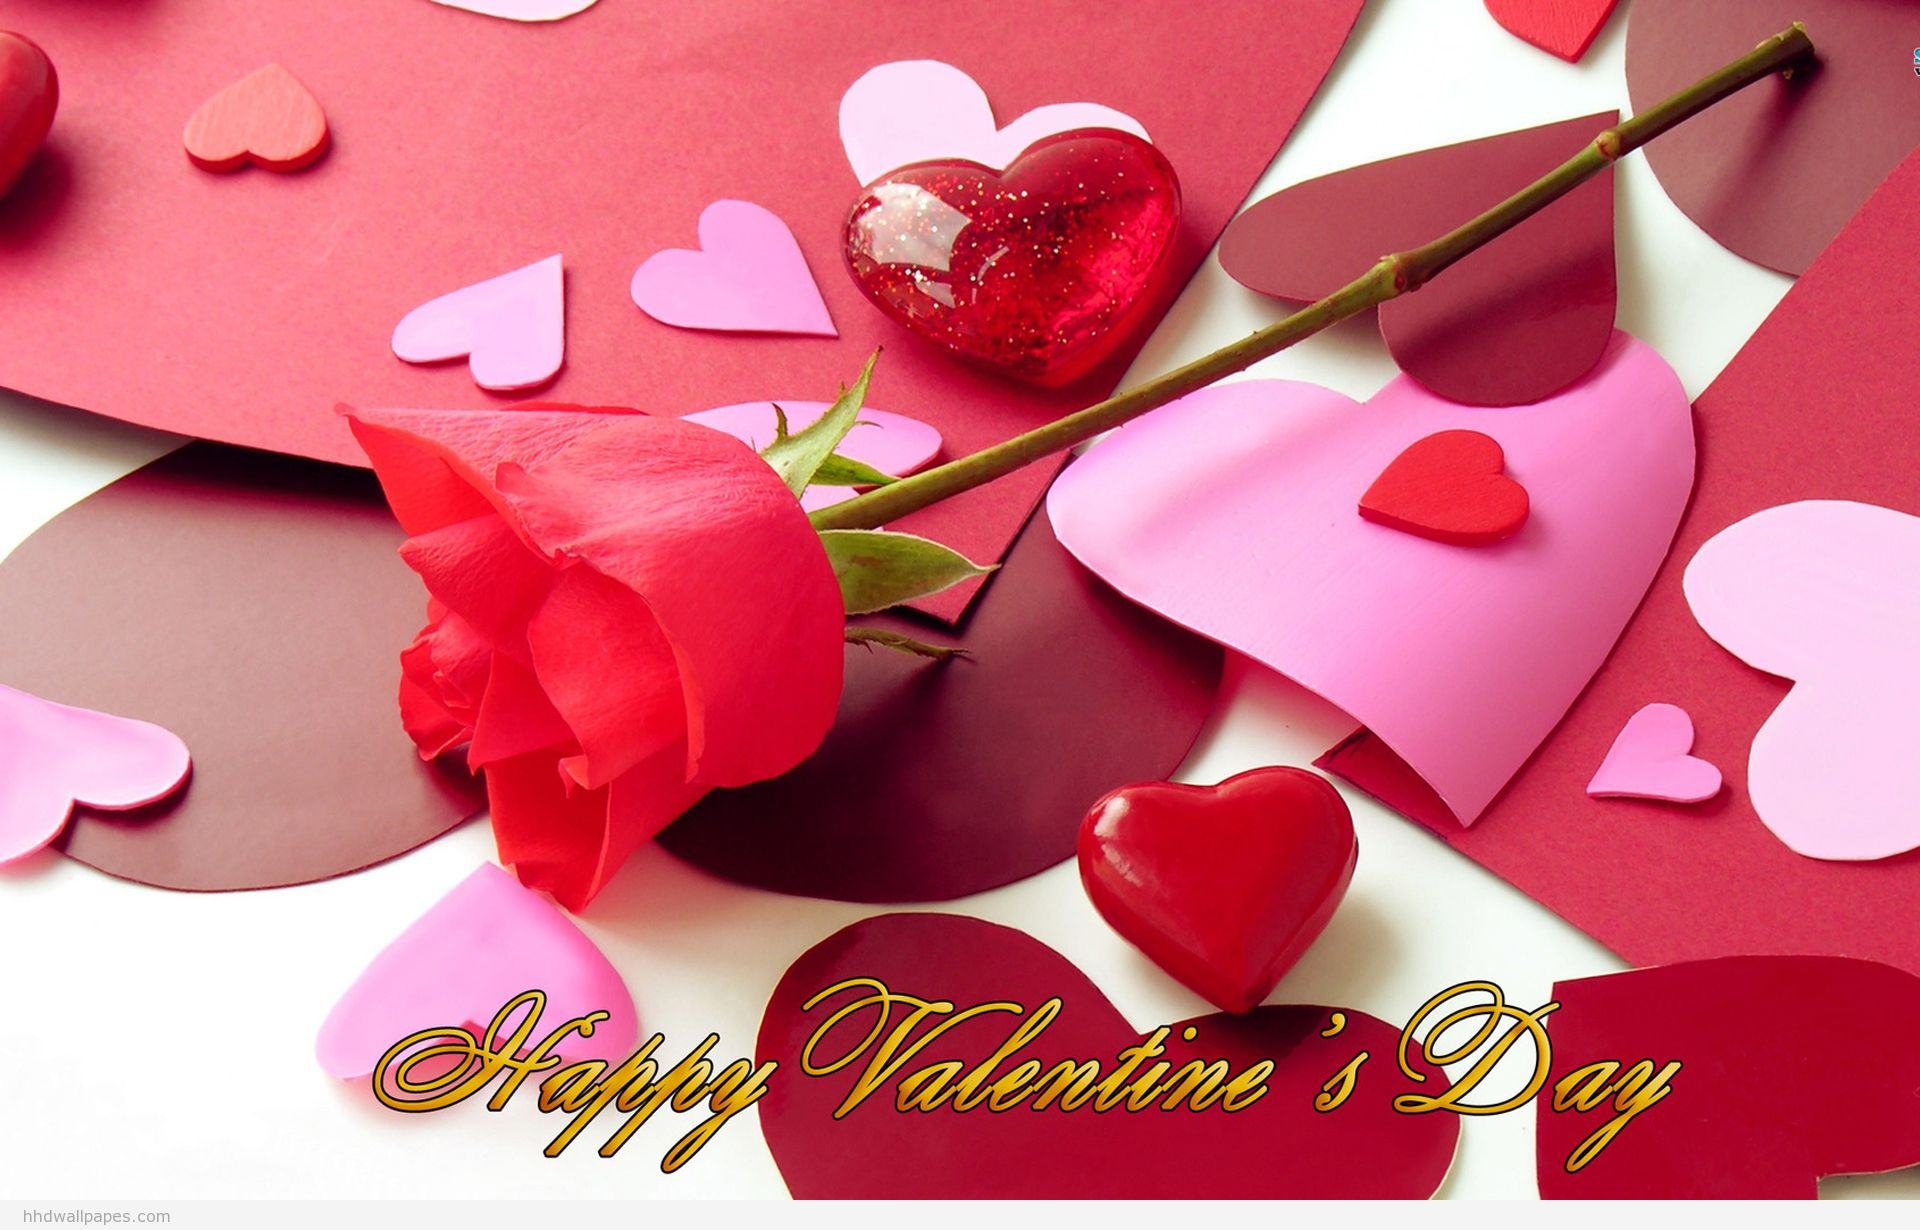 Ngày lễ tình nhân sắp đến rồi, hãy sẵn sàng để tận hưởng một ngày đặc biệt và đầy ý nghĩa của tình yêu. Chúng tôi xin giới thiệu đến bạn những ý tưởng hay và độc đáo để bạn có một ngày Valentine hoàn hảo.